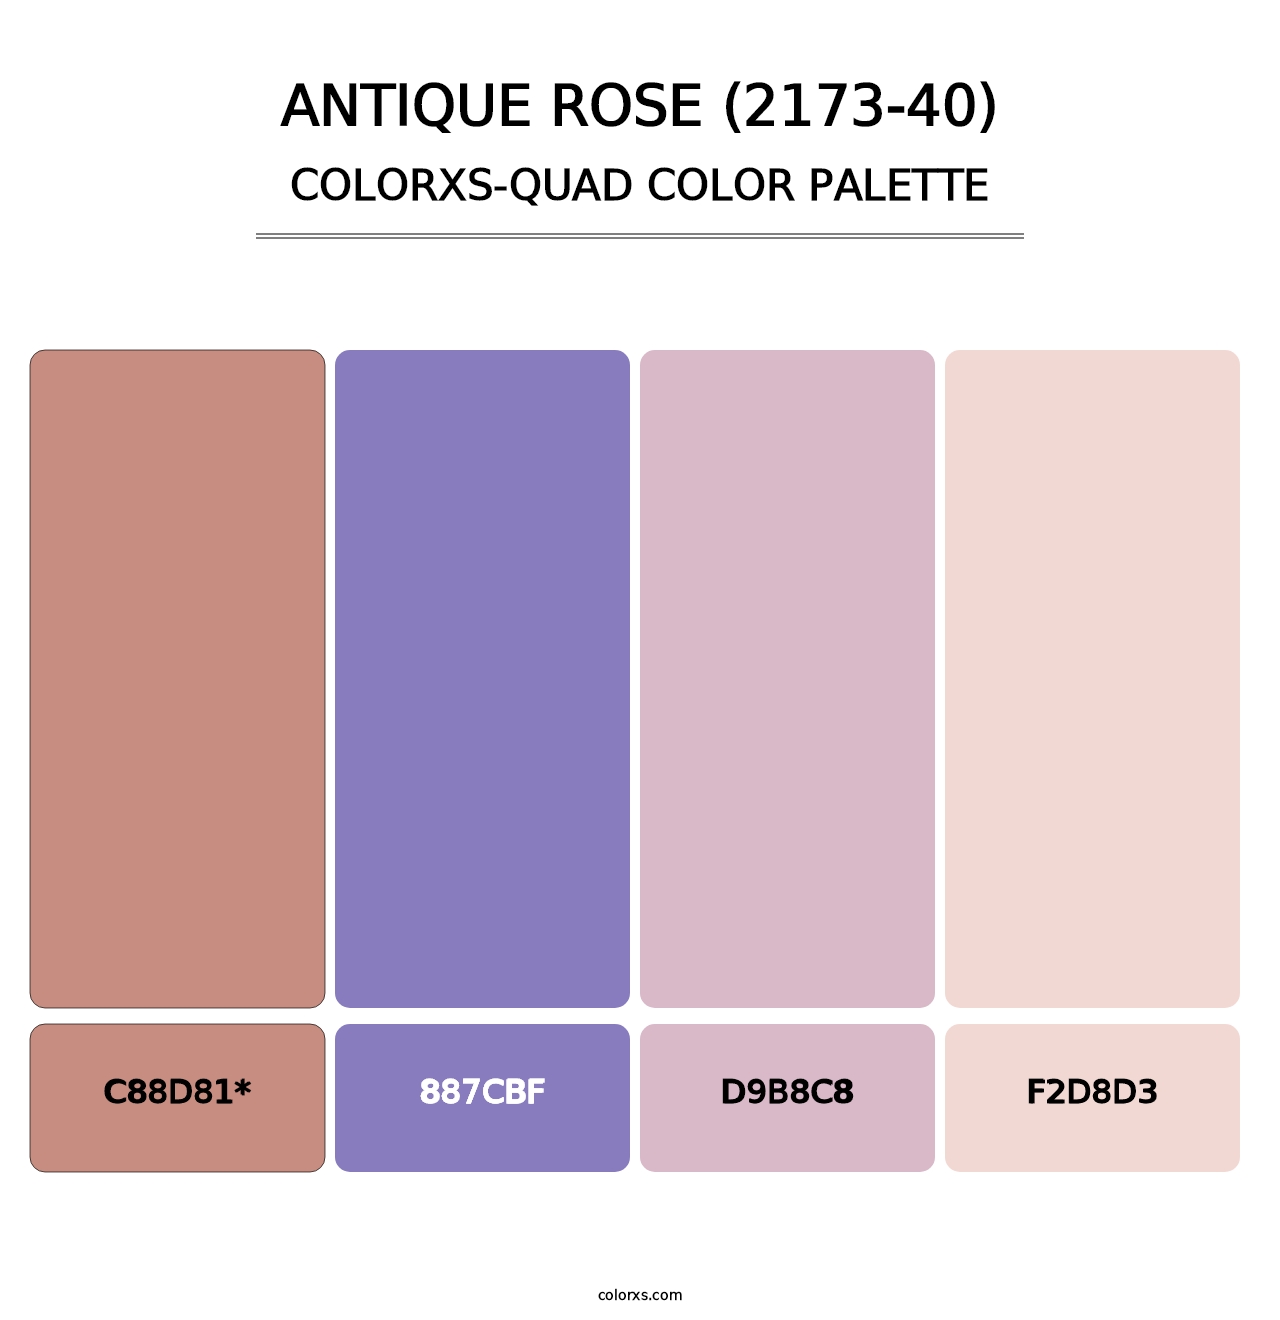 Antique Rose (2173-40) - Colorxs Quad Palette